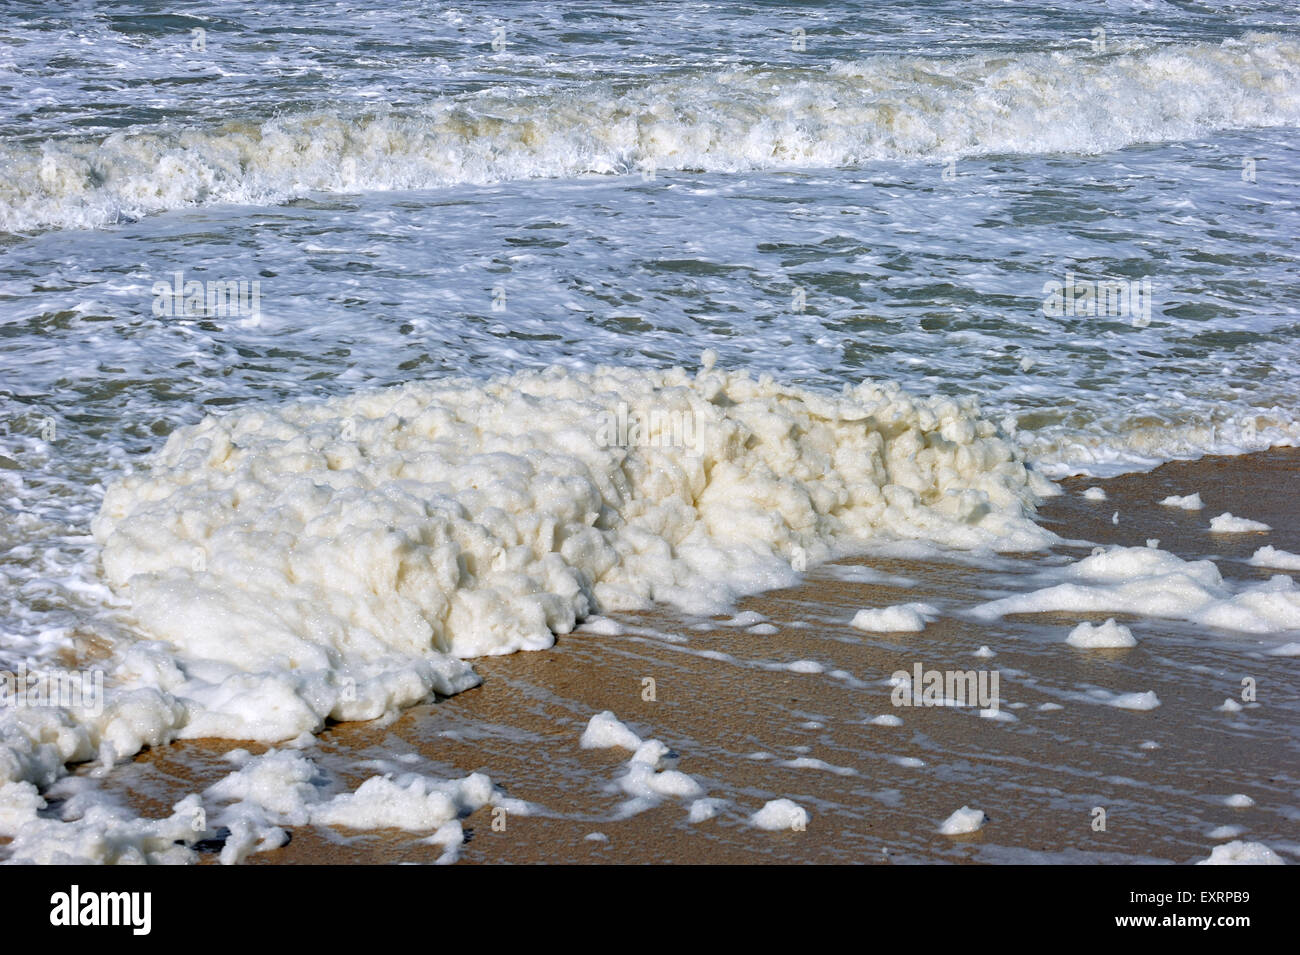 Spume / di schiuma di mare oceano / schiuma / spiaggia schiuma formata durante la burrascosa condizioni e a seguito di una fioritura algale (Phaeocystis) Foto Stock